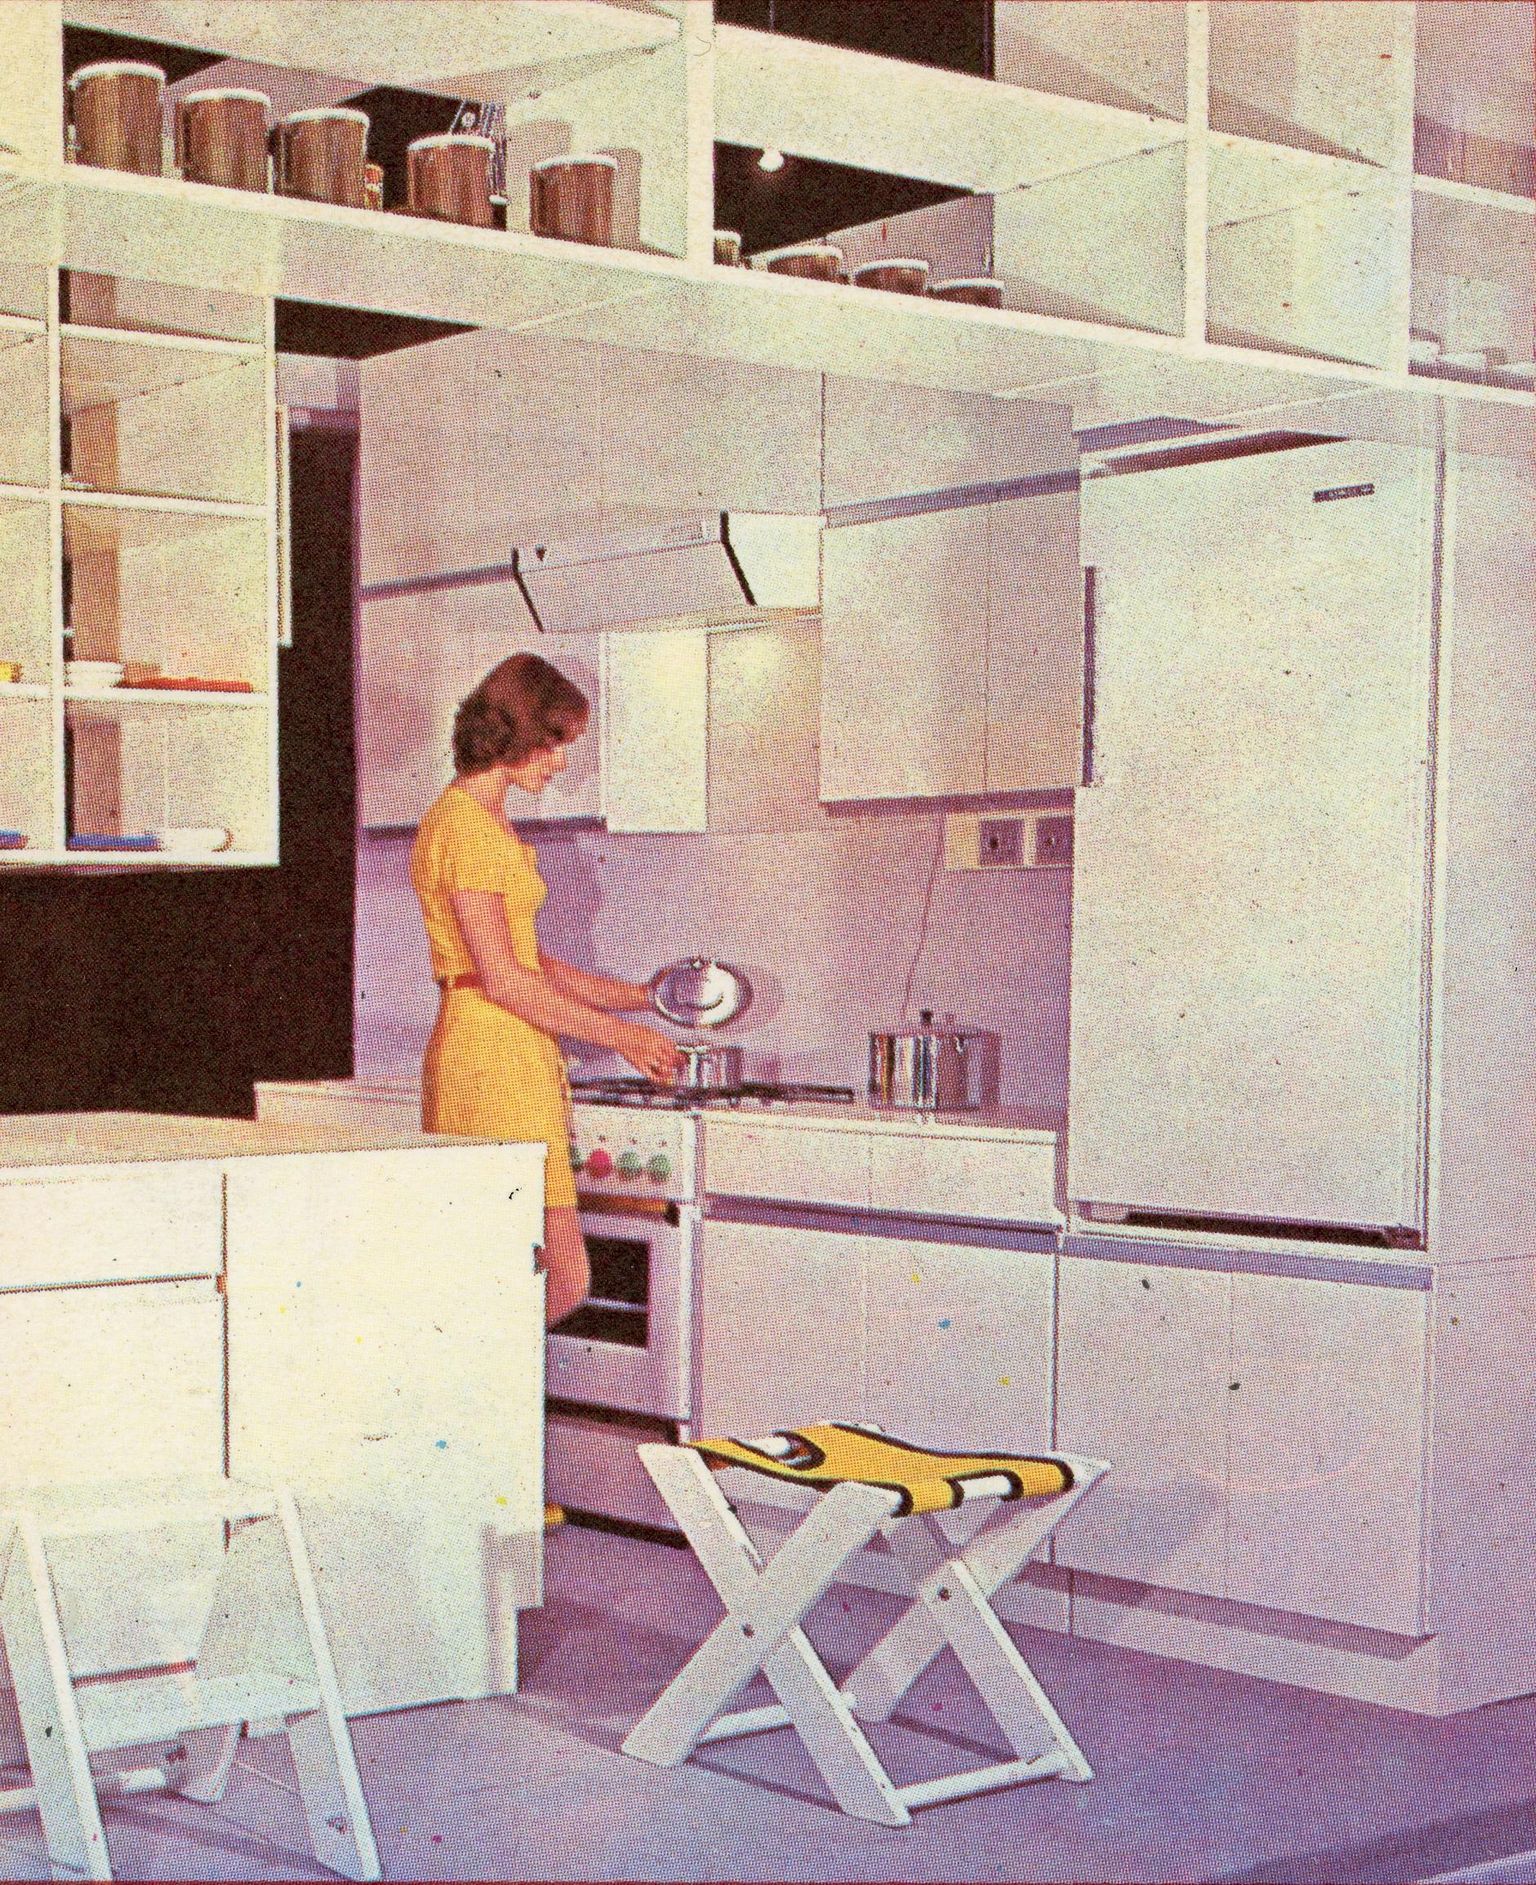 Standardi köögimööbel, 1975. FOTO: Reklaambuklett